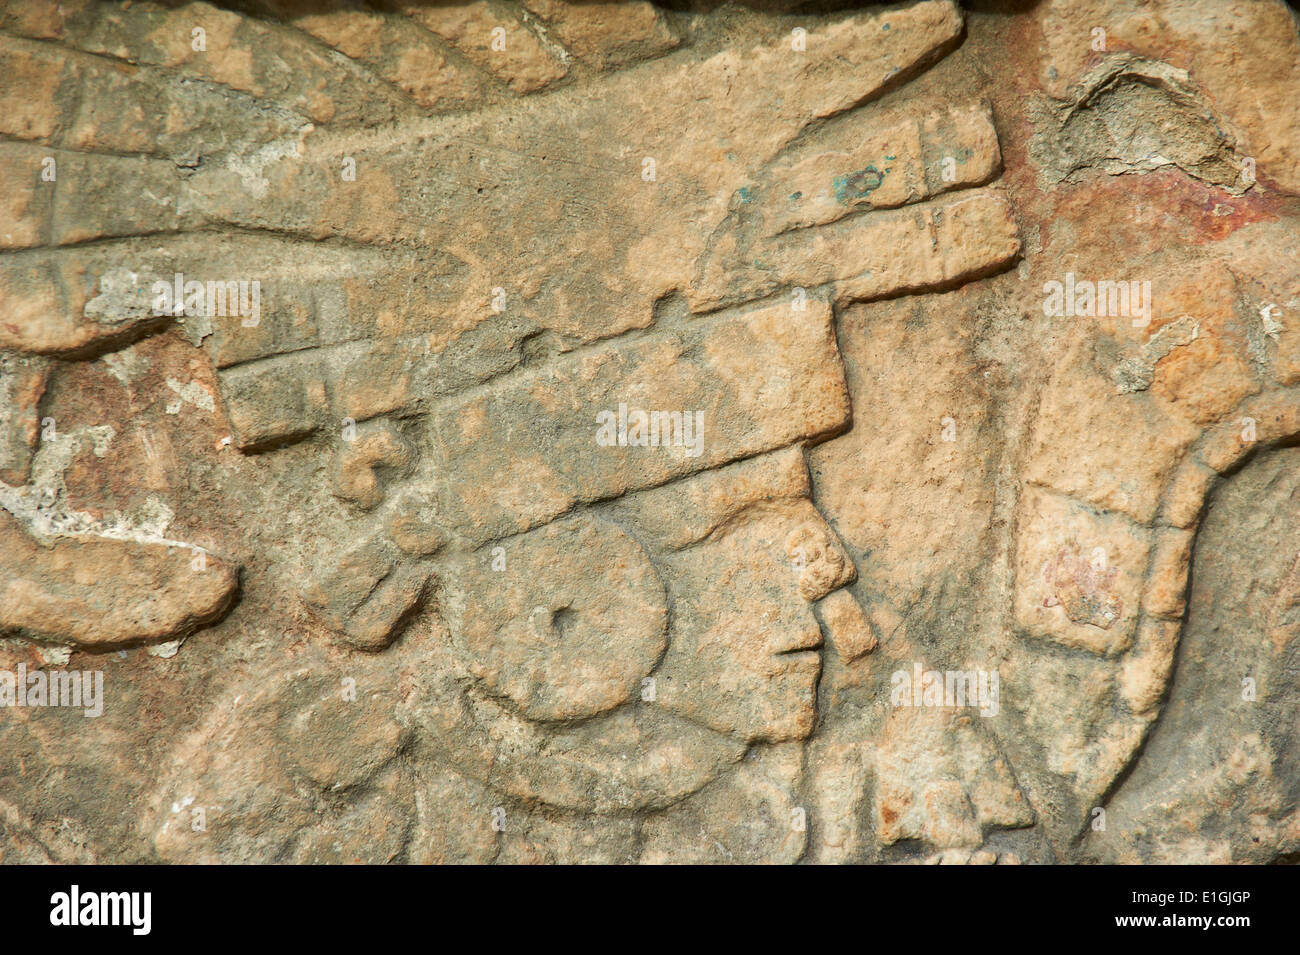 Le Mexique, l'état du Yucatan, Chichen Itza, site archéologique classé au patrimoine mondial de l'UNESCO, d'anciennes ruines mayas, allégement de la pierre Banque D'Images